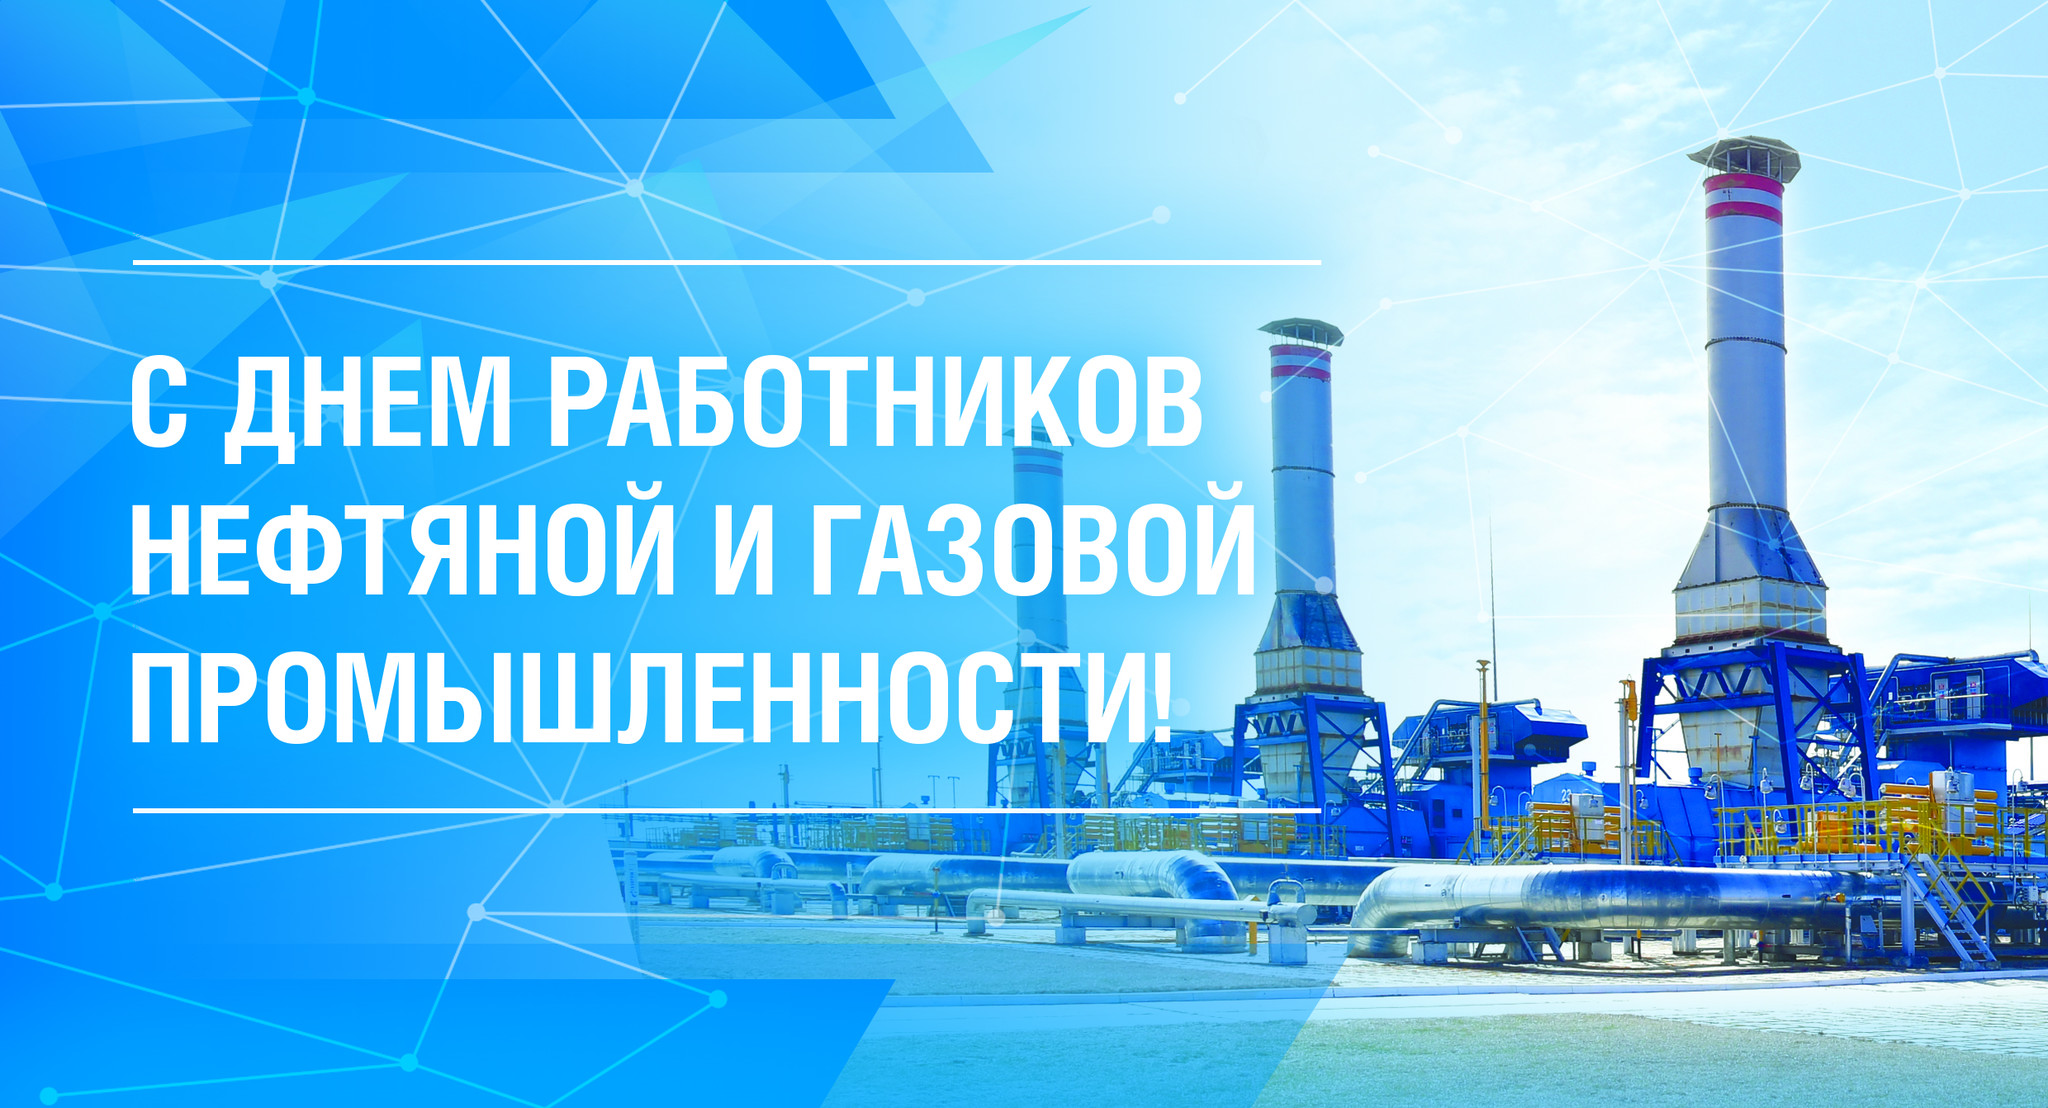 Поздравление губернатора Алексея Текслера с Днем работников нефтяной и газовой промышленности